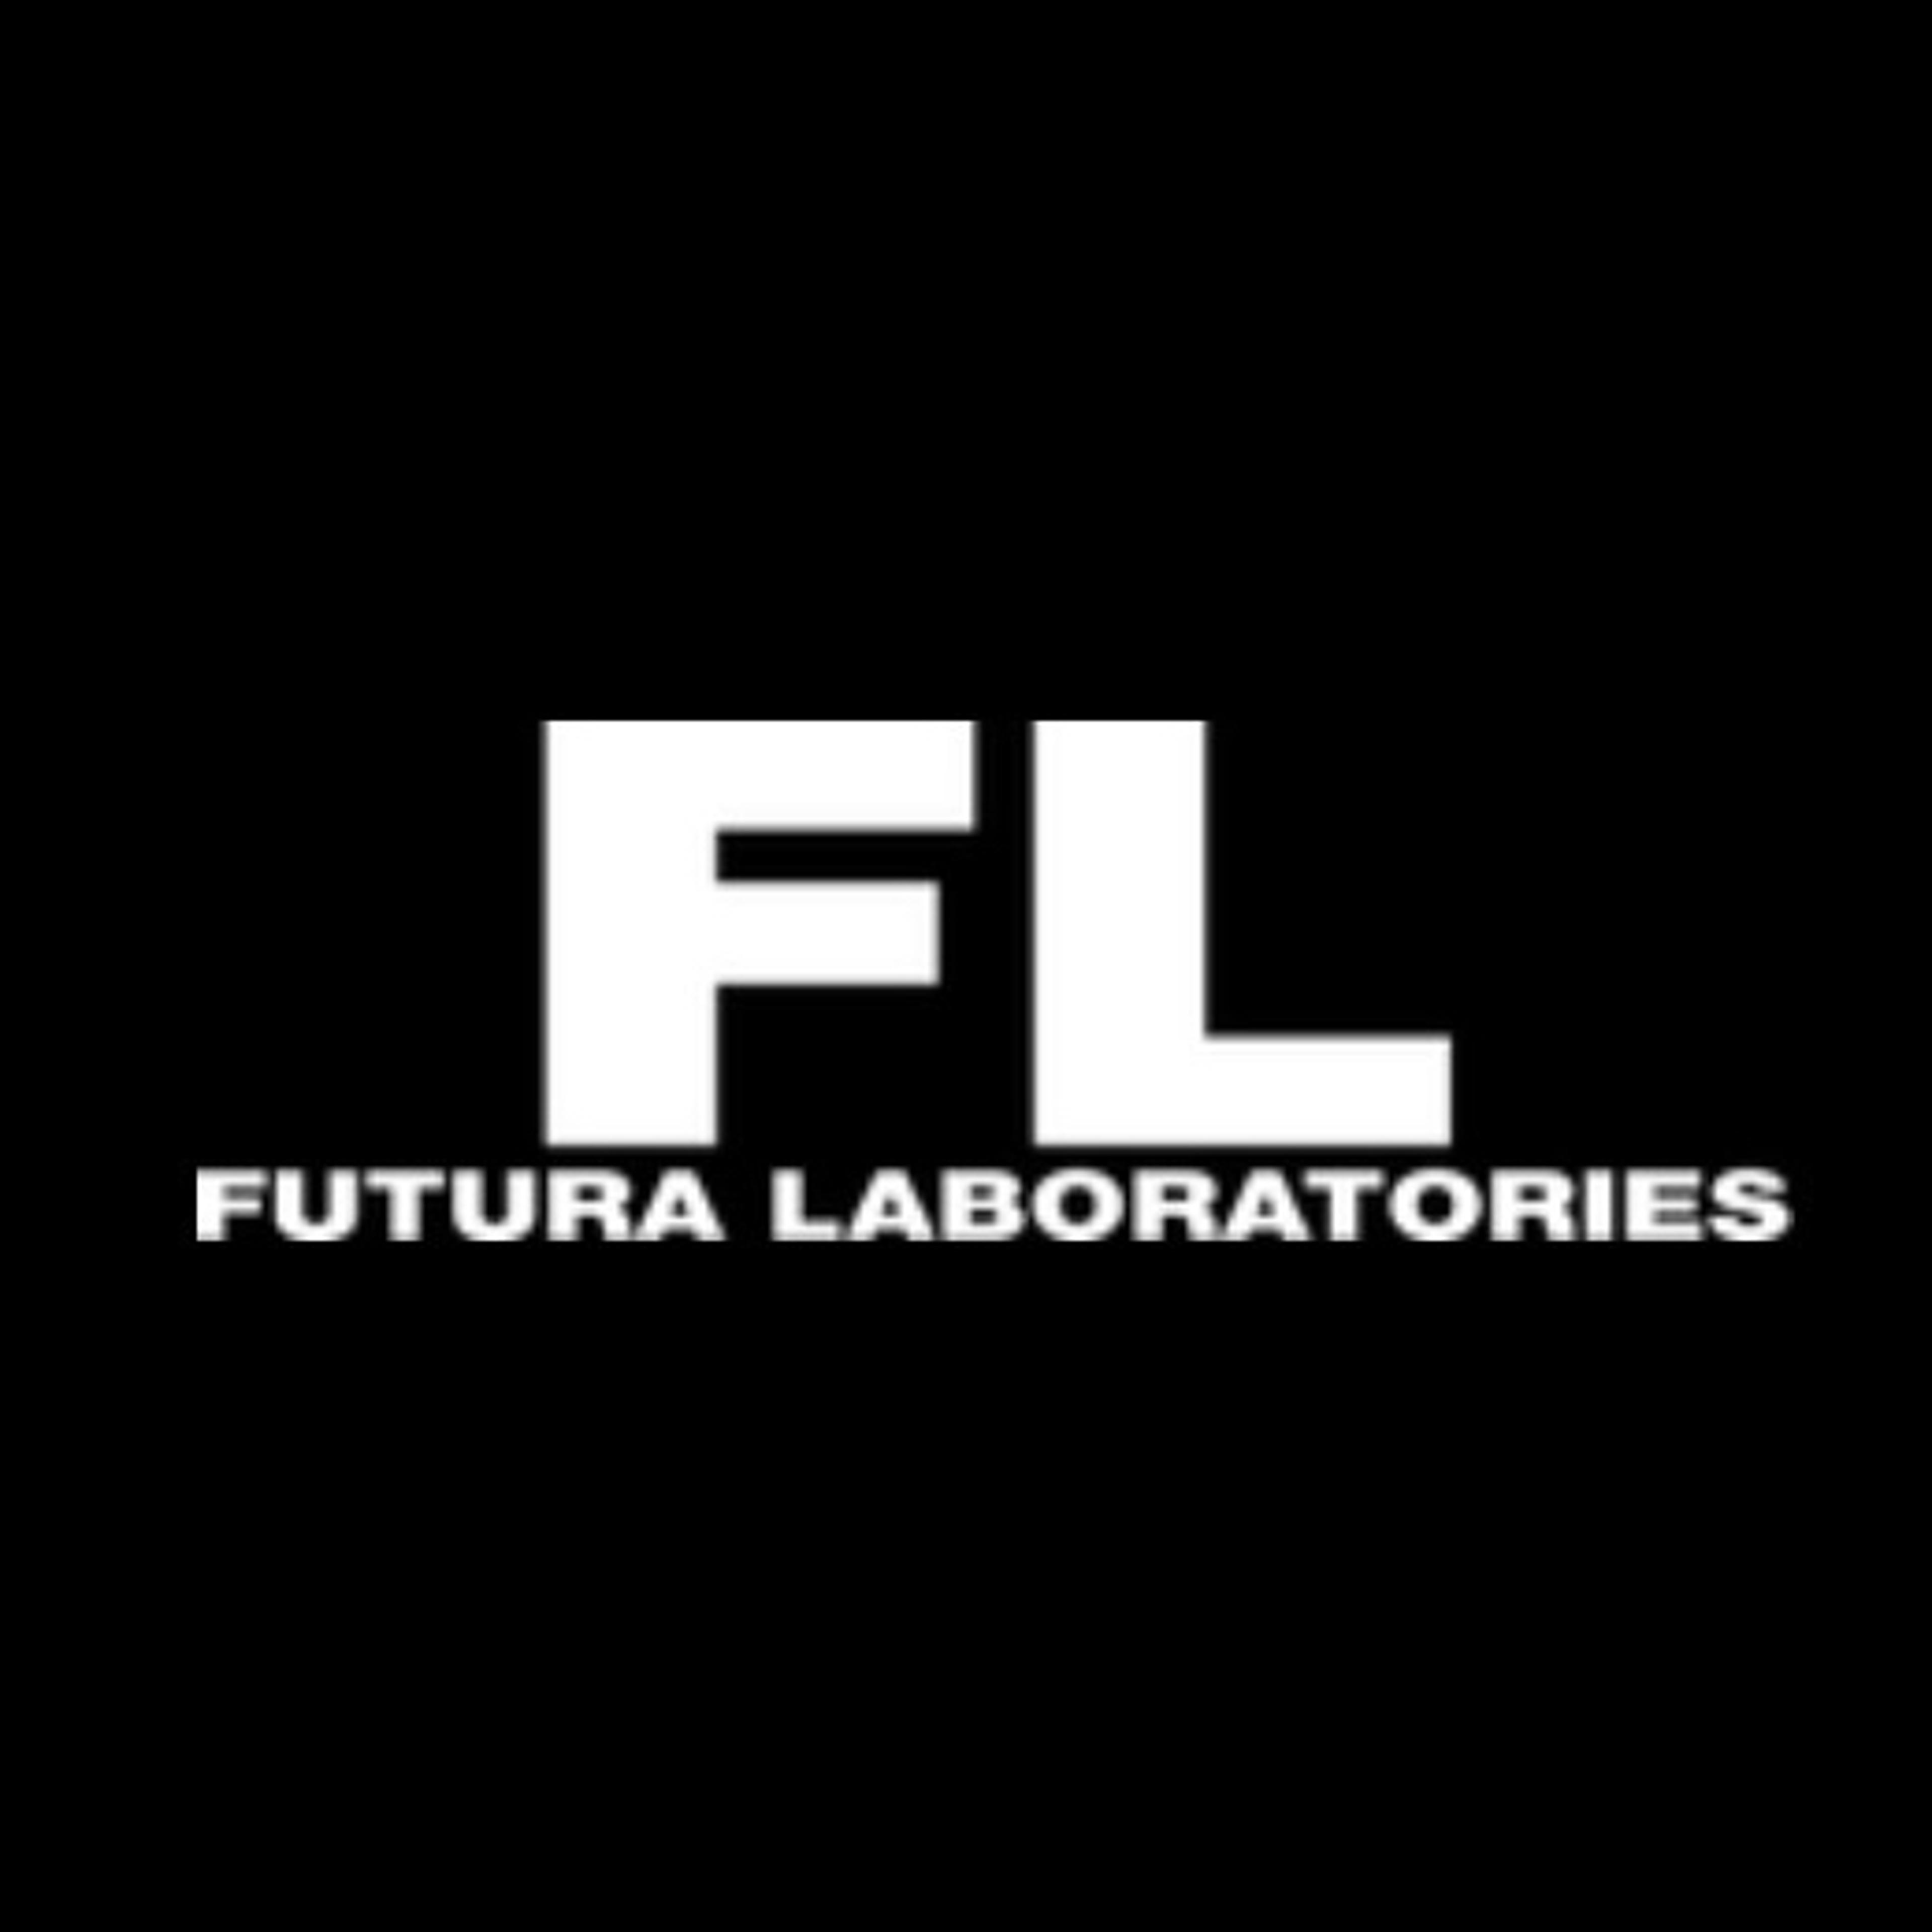 Futura Laboratories